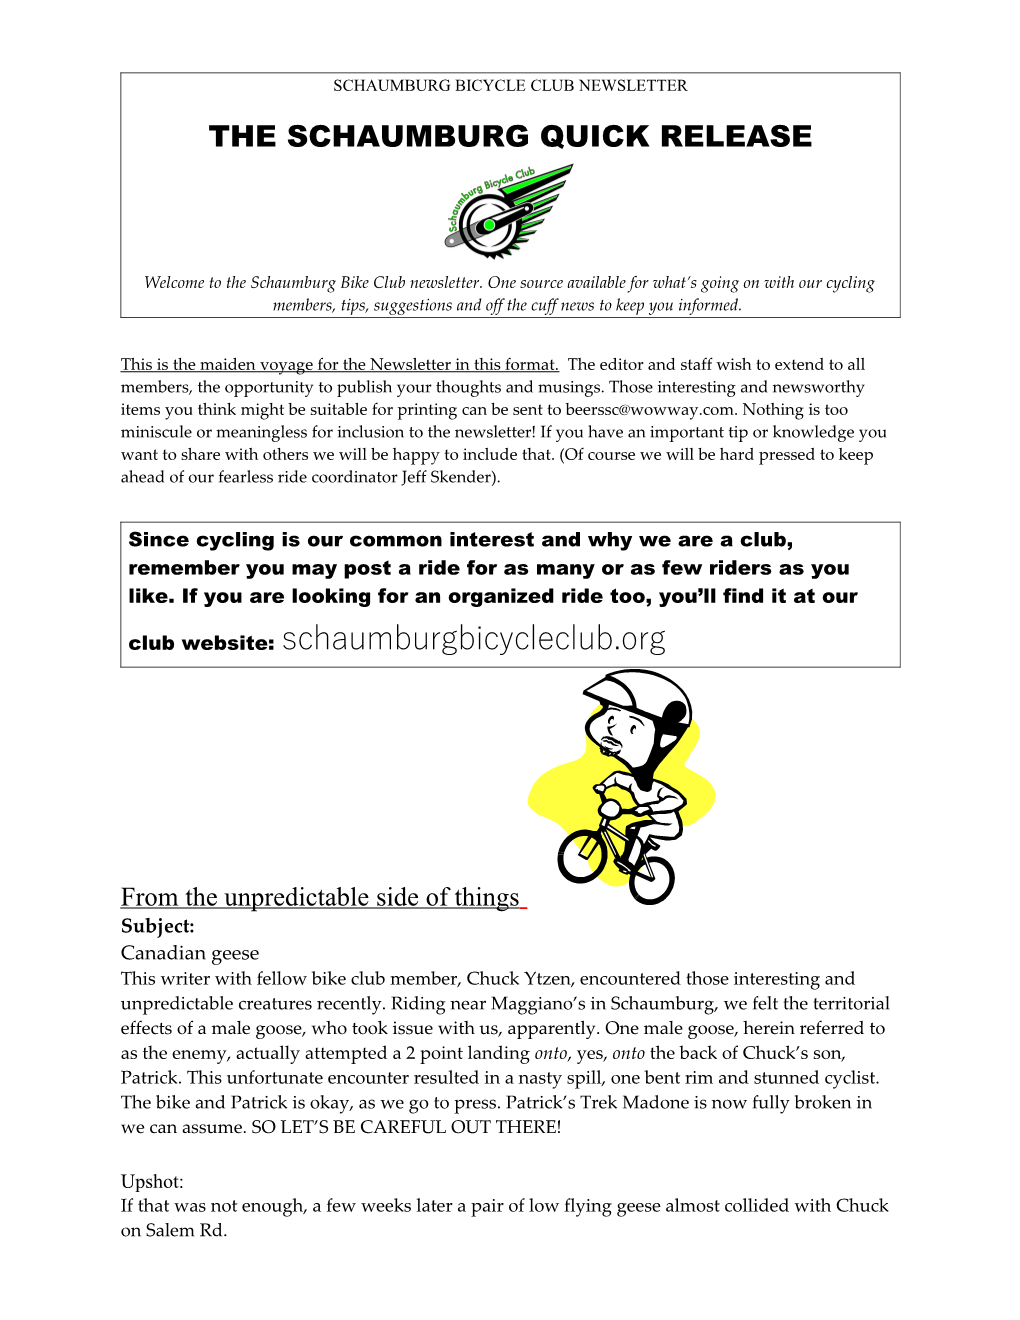 Schaumburg Bicycle Club Newsletter